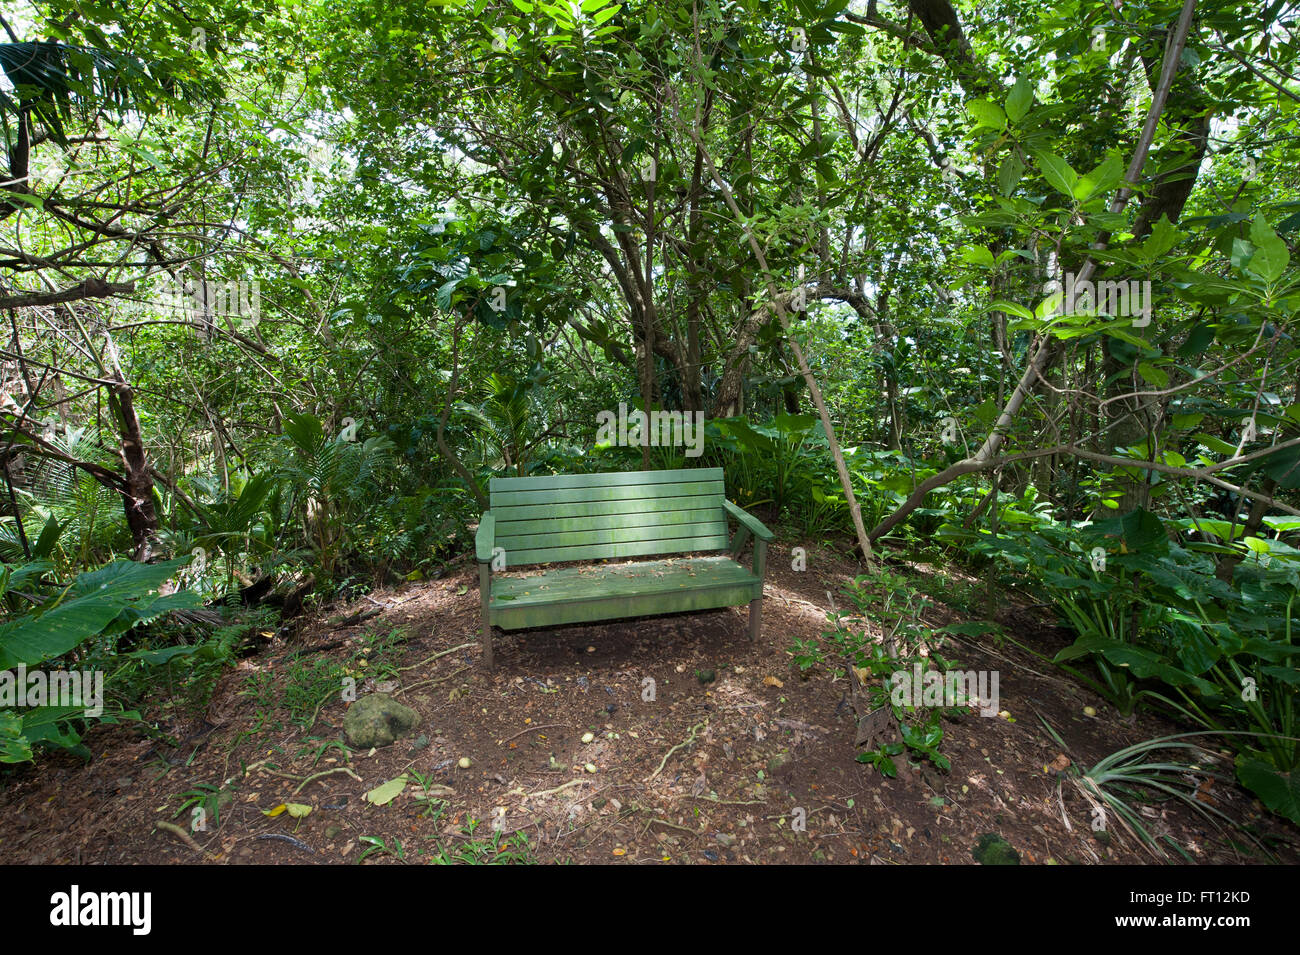 Banco verde en un bosque tropical, Pitcairn, Grupo de Islas Pitcairn, Territorio Británico de Ultramar, Pacífico Sur Foto de stock